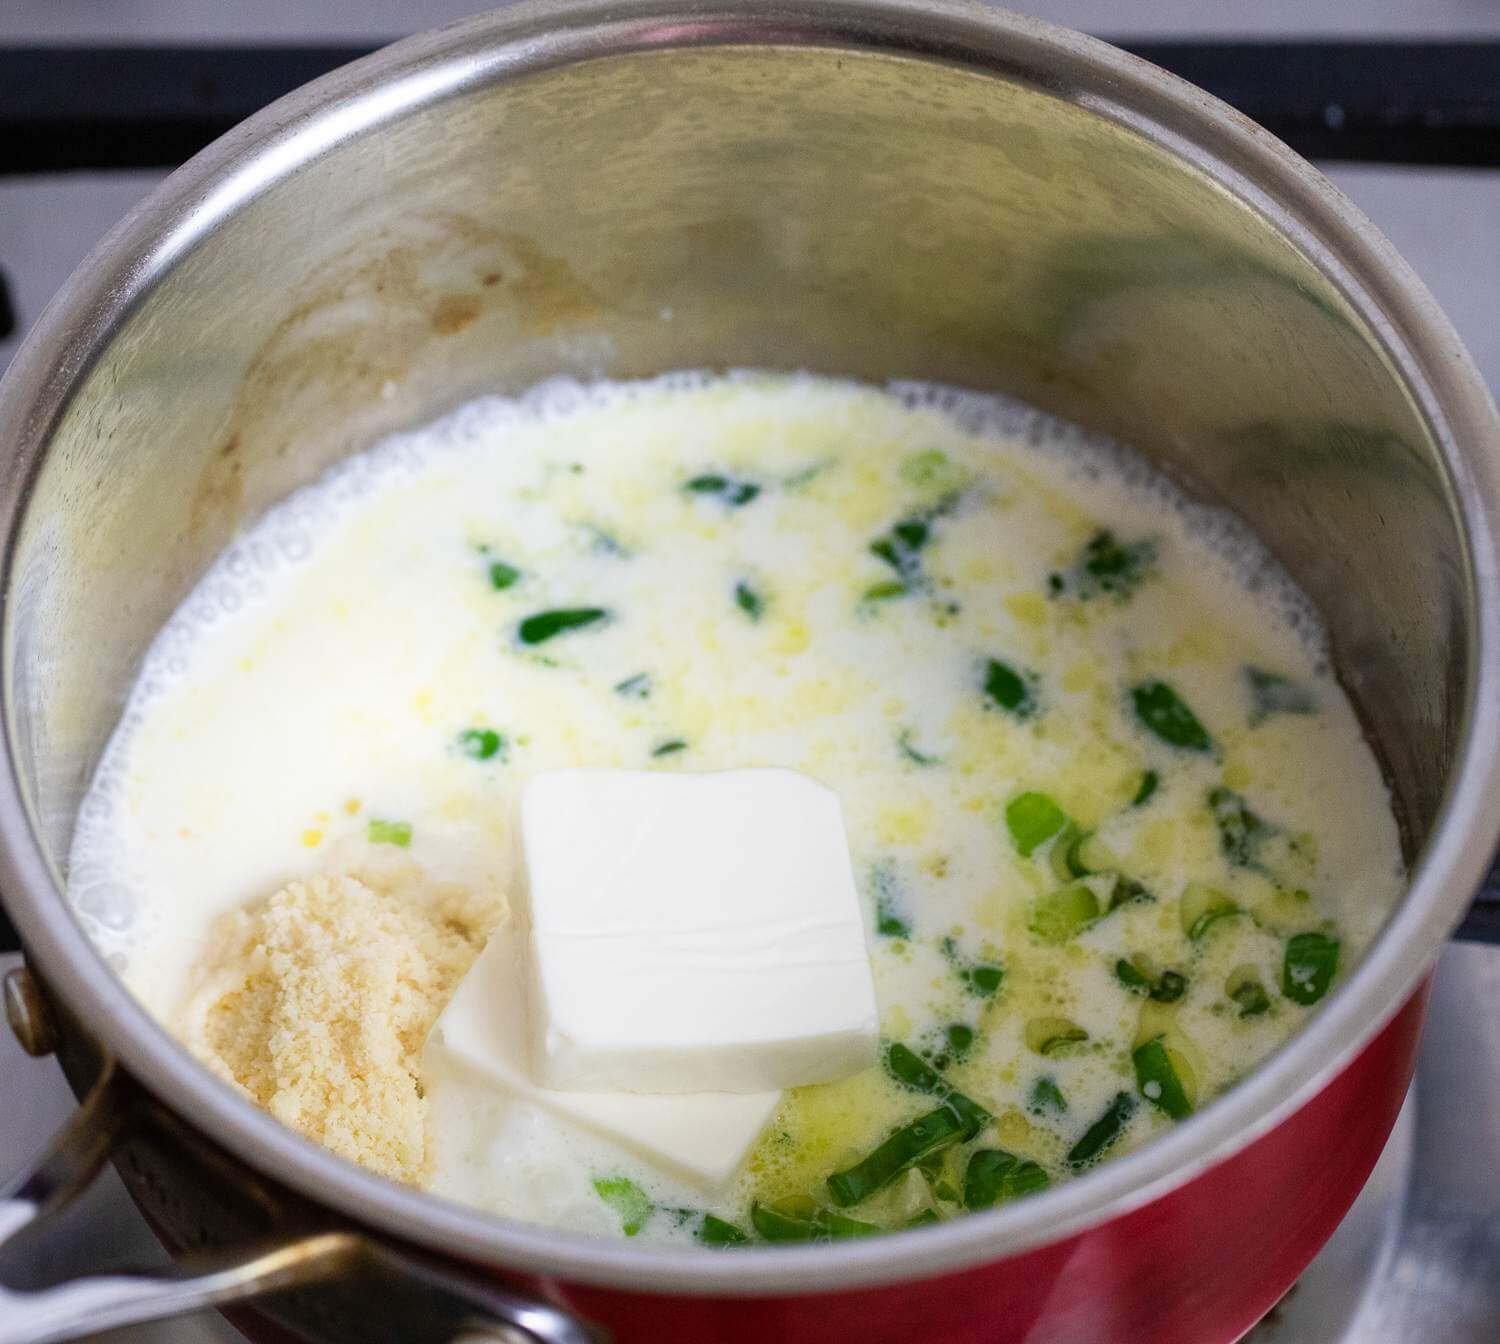 Твердый сыр натереть. Добавить его вместе с молоком и плавленым сыром в кастрюлю. Тщательно перемешать до образования однородной консистенции.